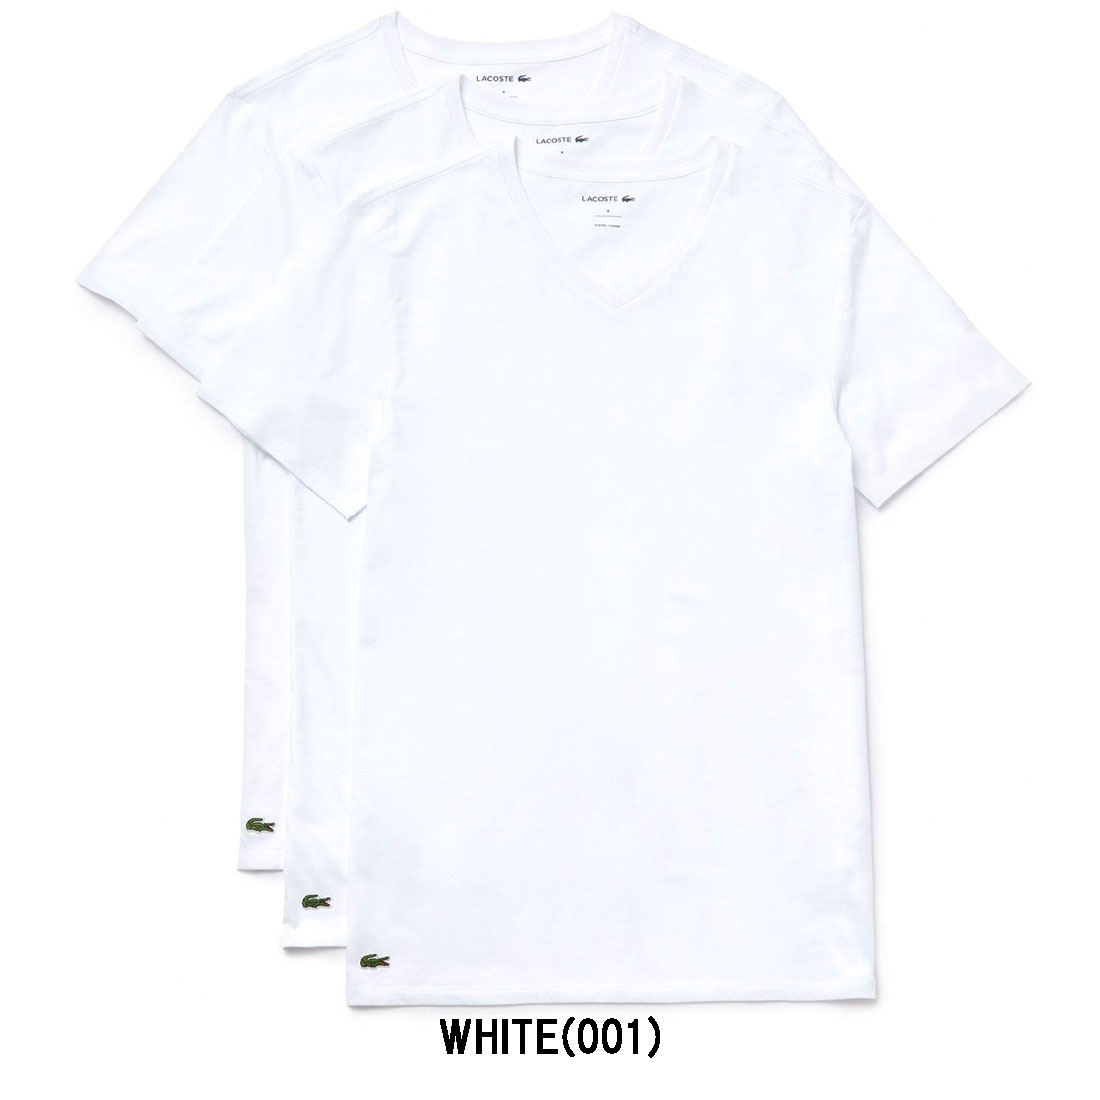 LACOSTE(ラコステ)Vネック 無地 インナー Tシャツ ワンポイント 3枚組 半袖 メンズ TH3374